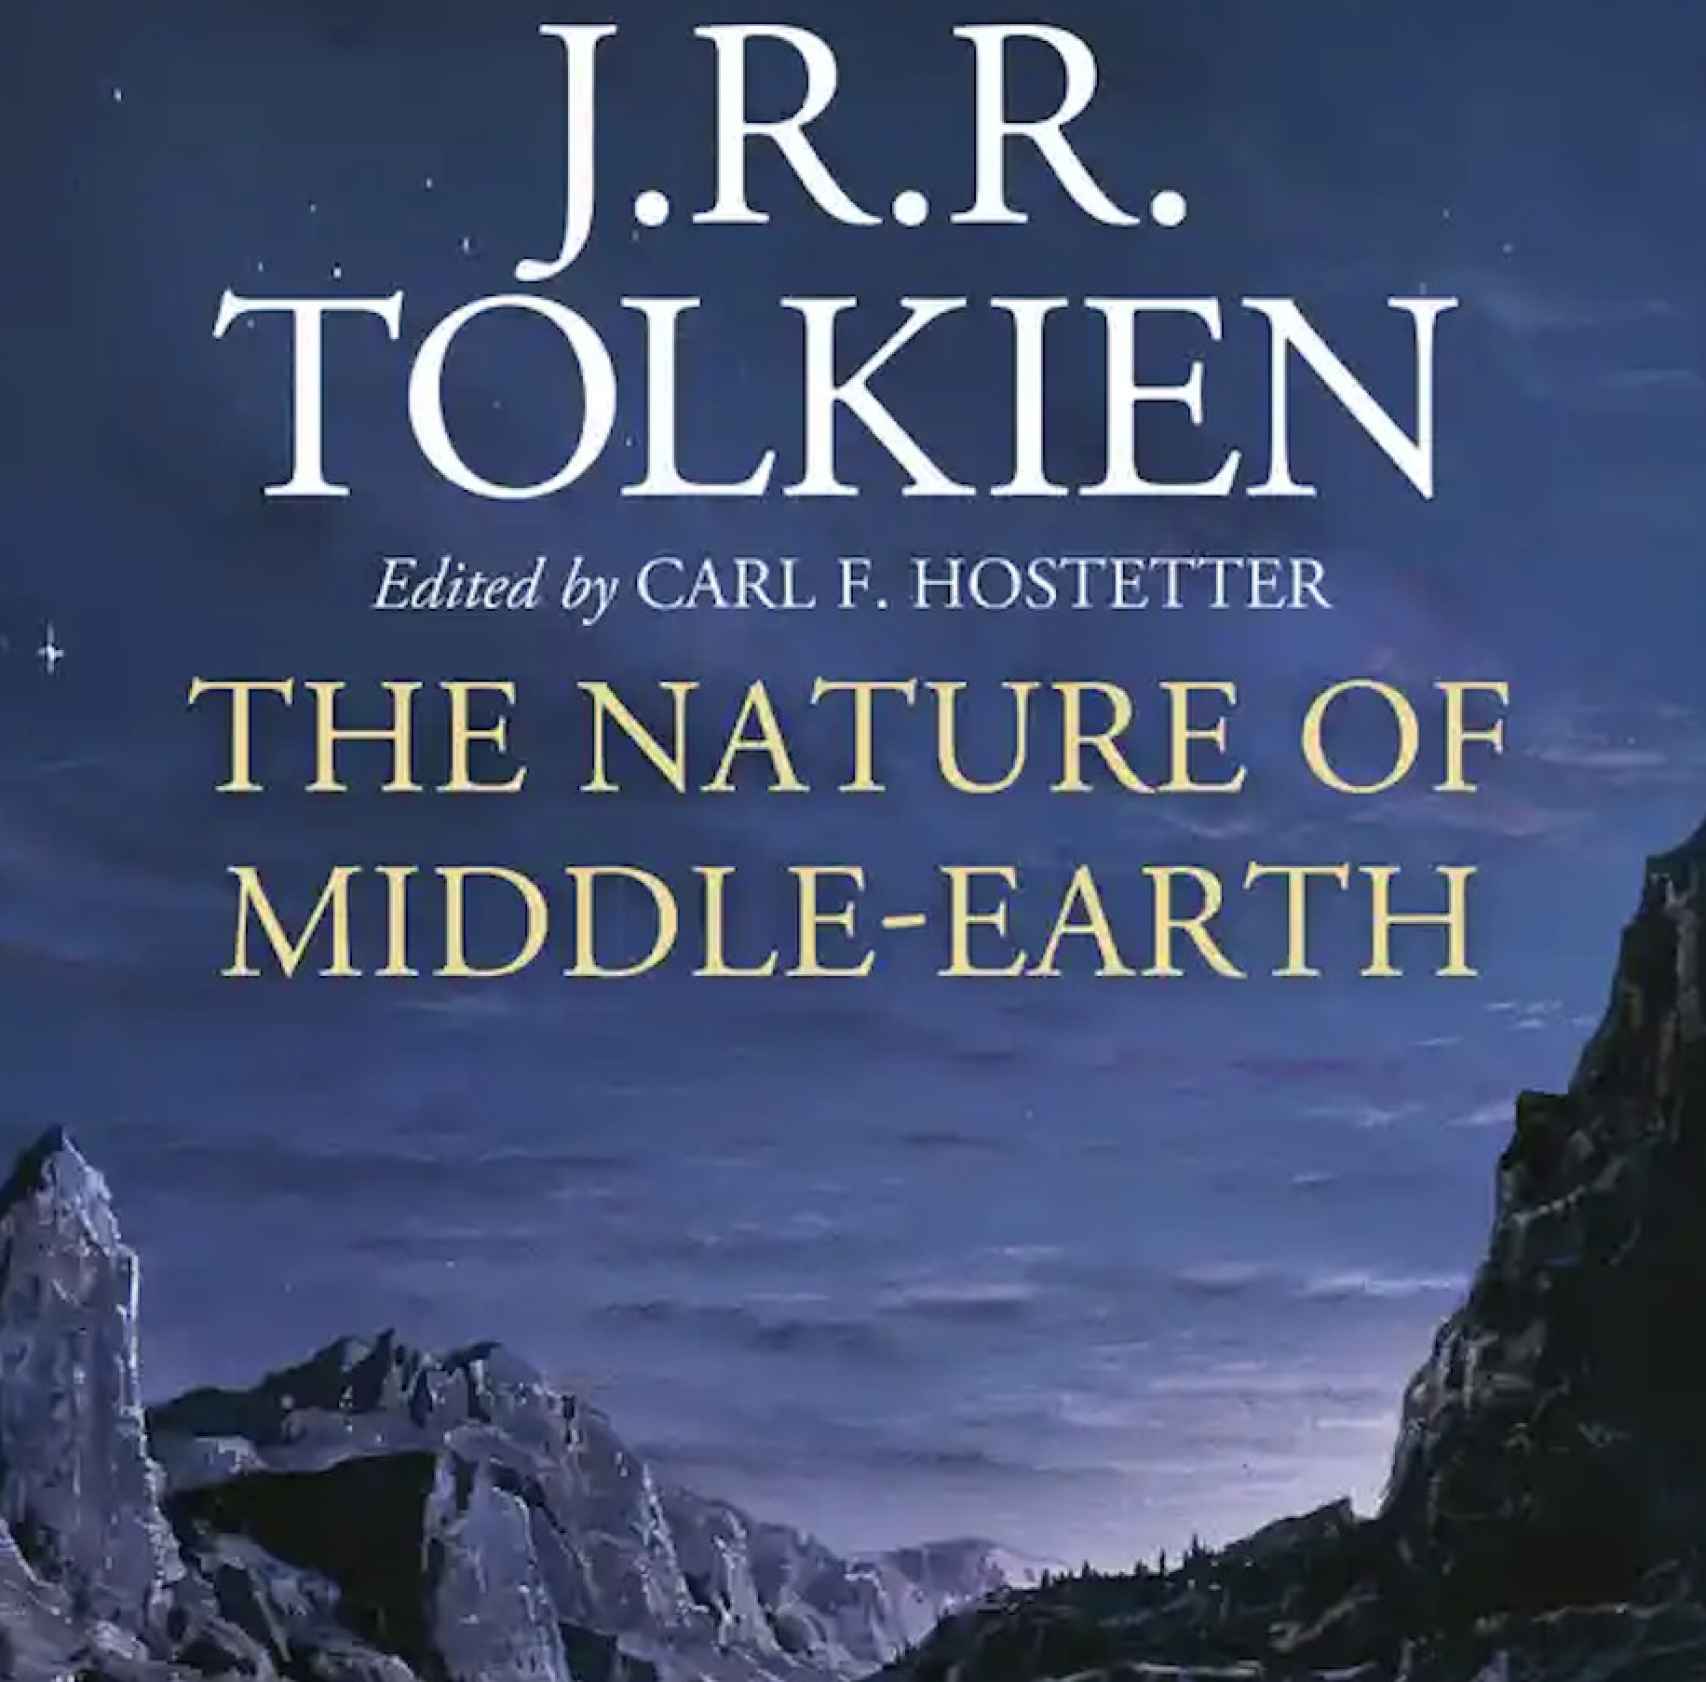 Portada del nuevo libro de J.R.R. Tolkien.